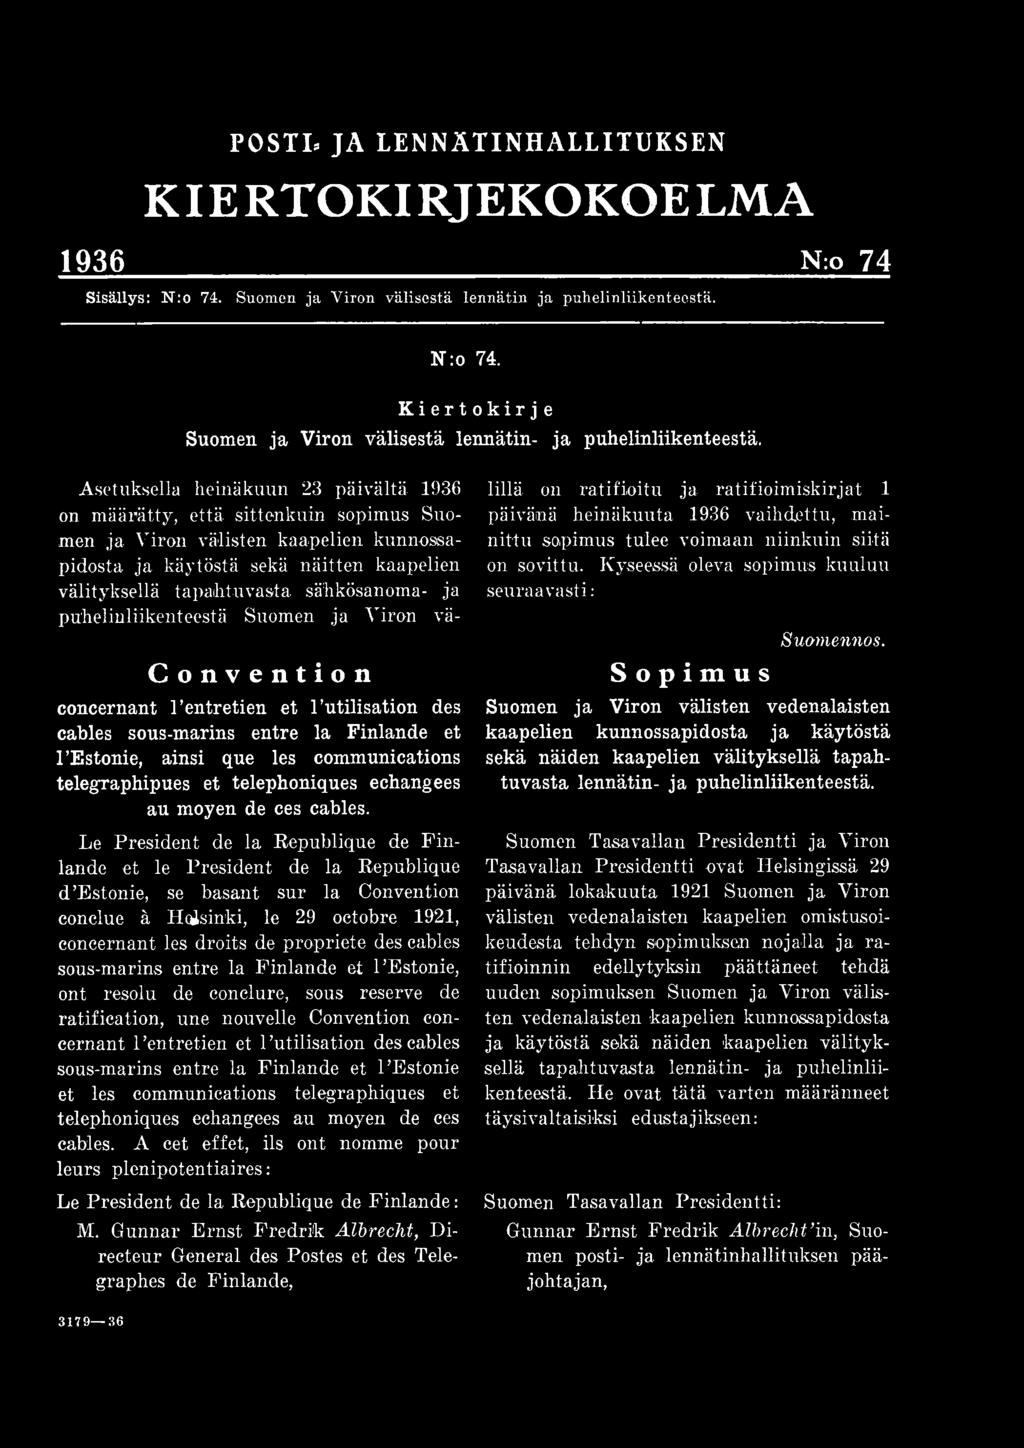 Le President de la Republique de Finlande et le President de la Republique d Estonie, se basant sur la Convention conclue ä Helsinki, le 29 octobre 1921, concernant les droits de propriete des cables